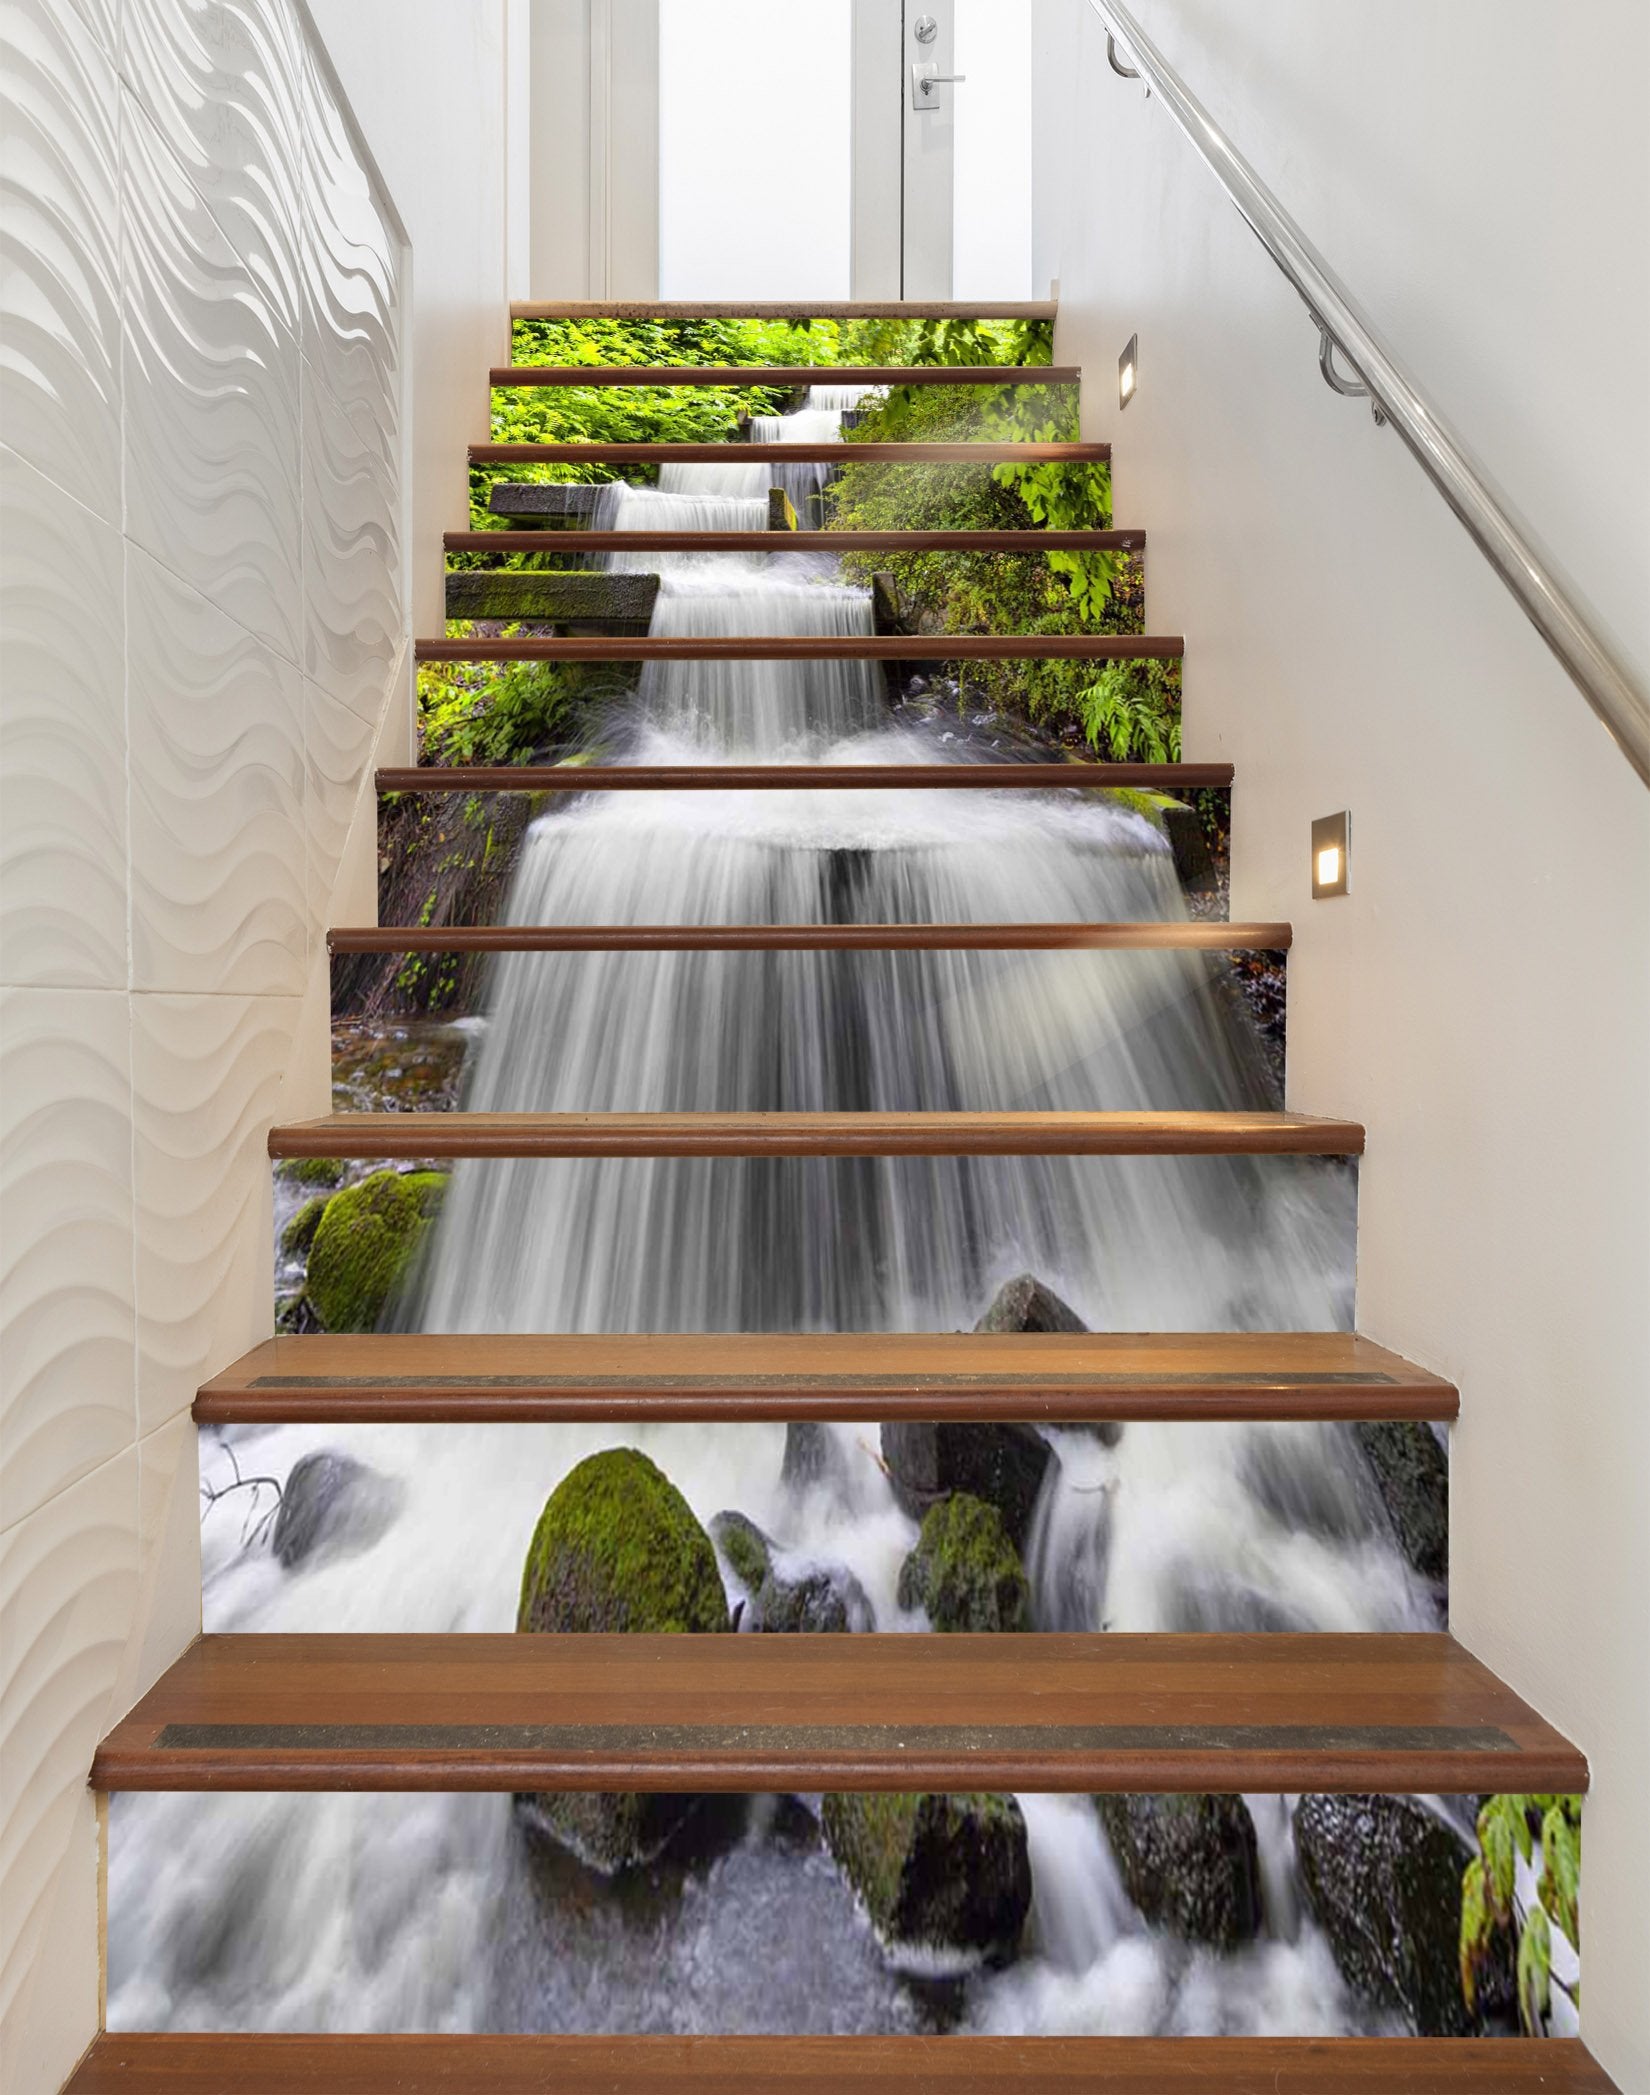 3D Beautiful River 1112 Stair Risers Wallpaper AJ Wallpaper 